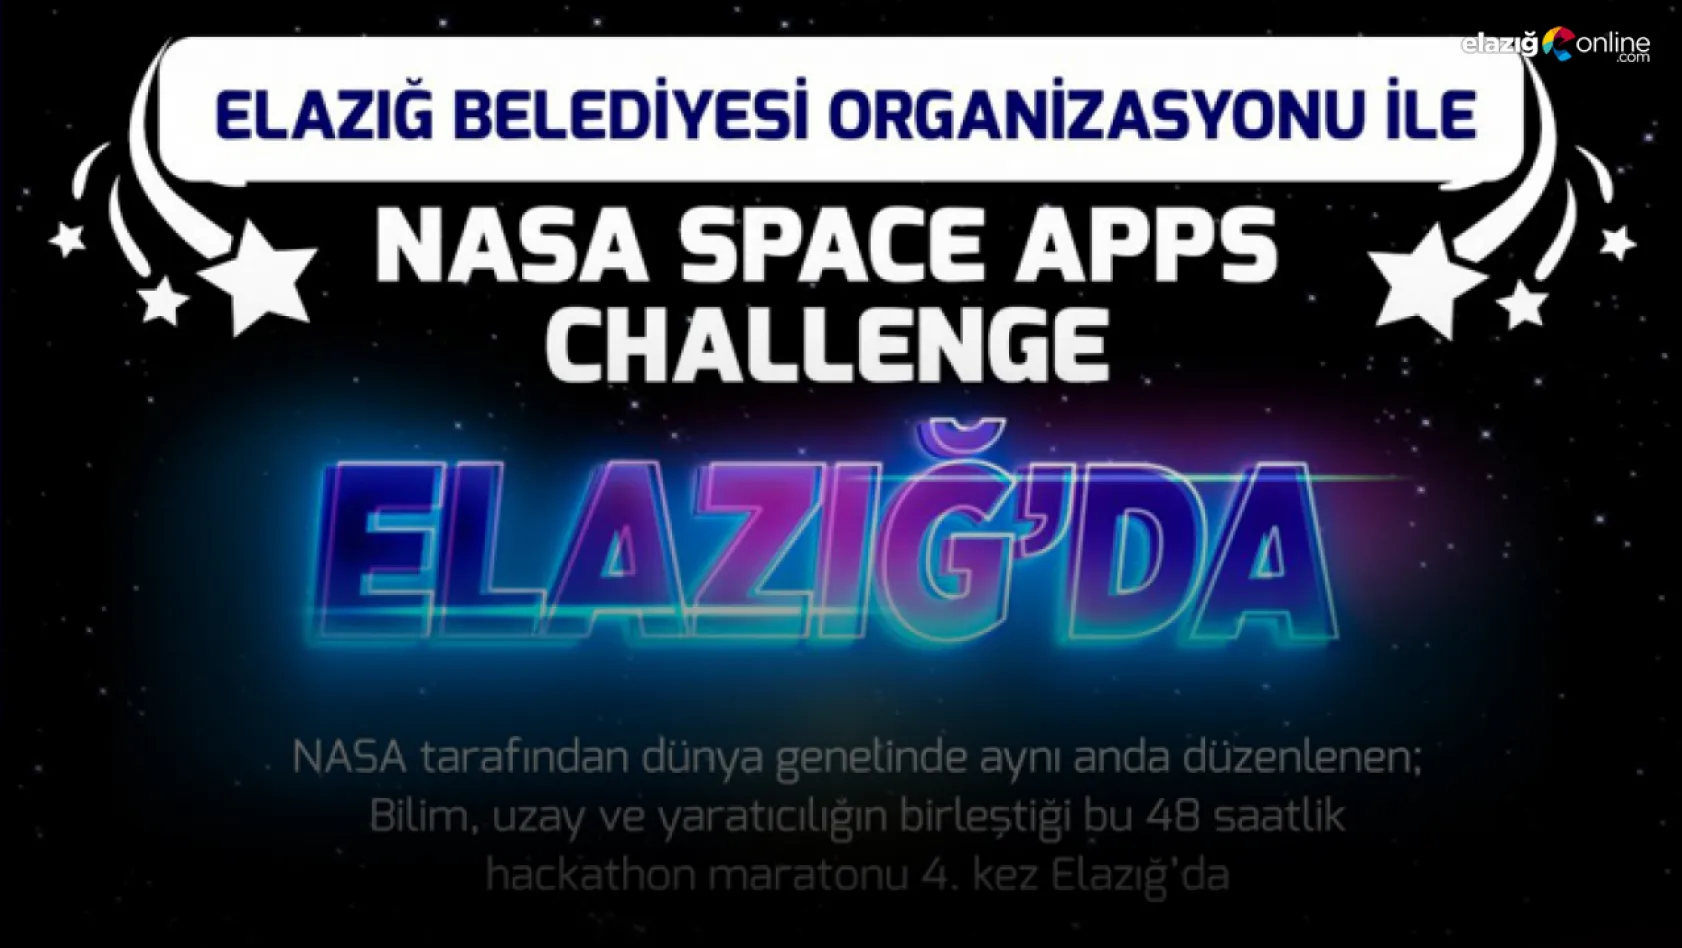 Dünyanın en büyük Hackathon yarışmasına Elazığ ev sahipliği yapacak!